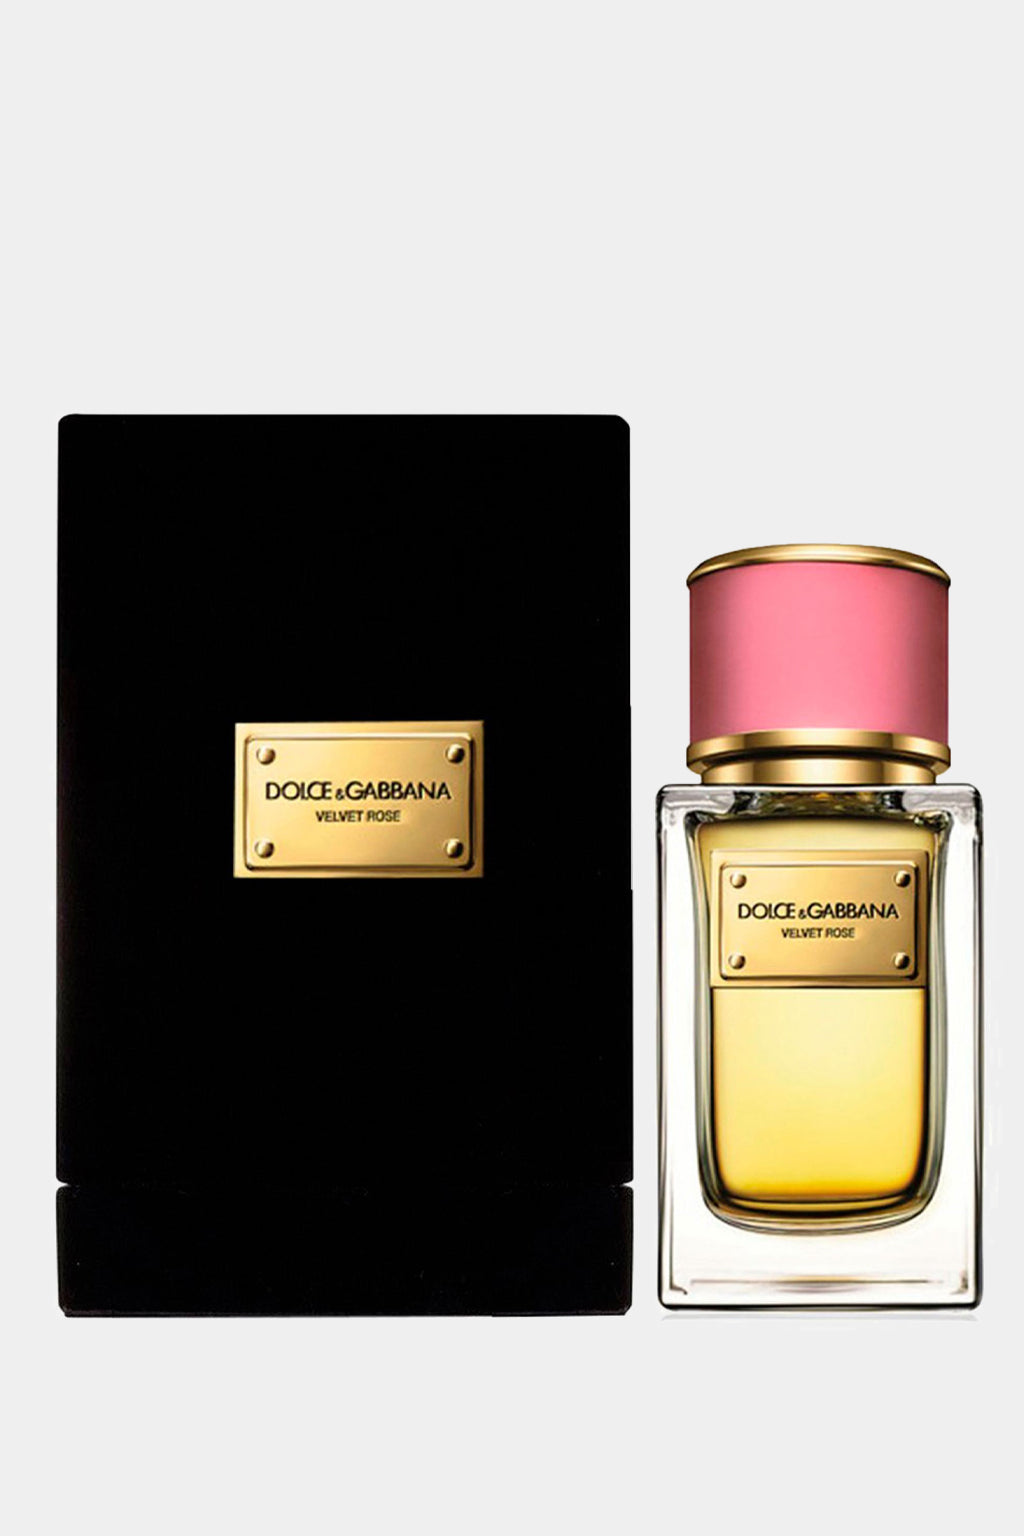 Dolce&Gabbana - Velvet Rose Eau de Parfum